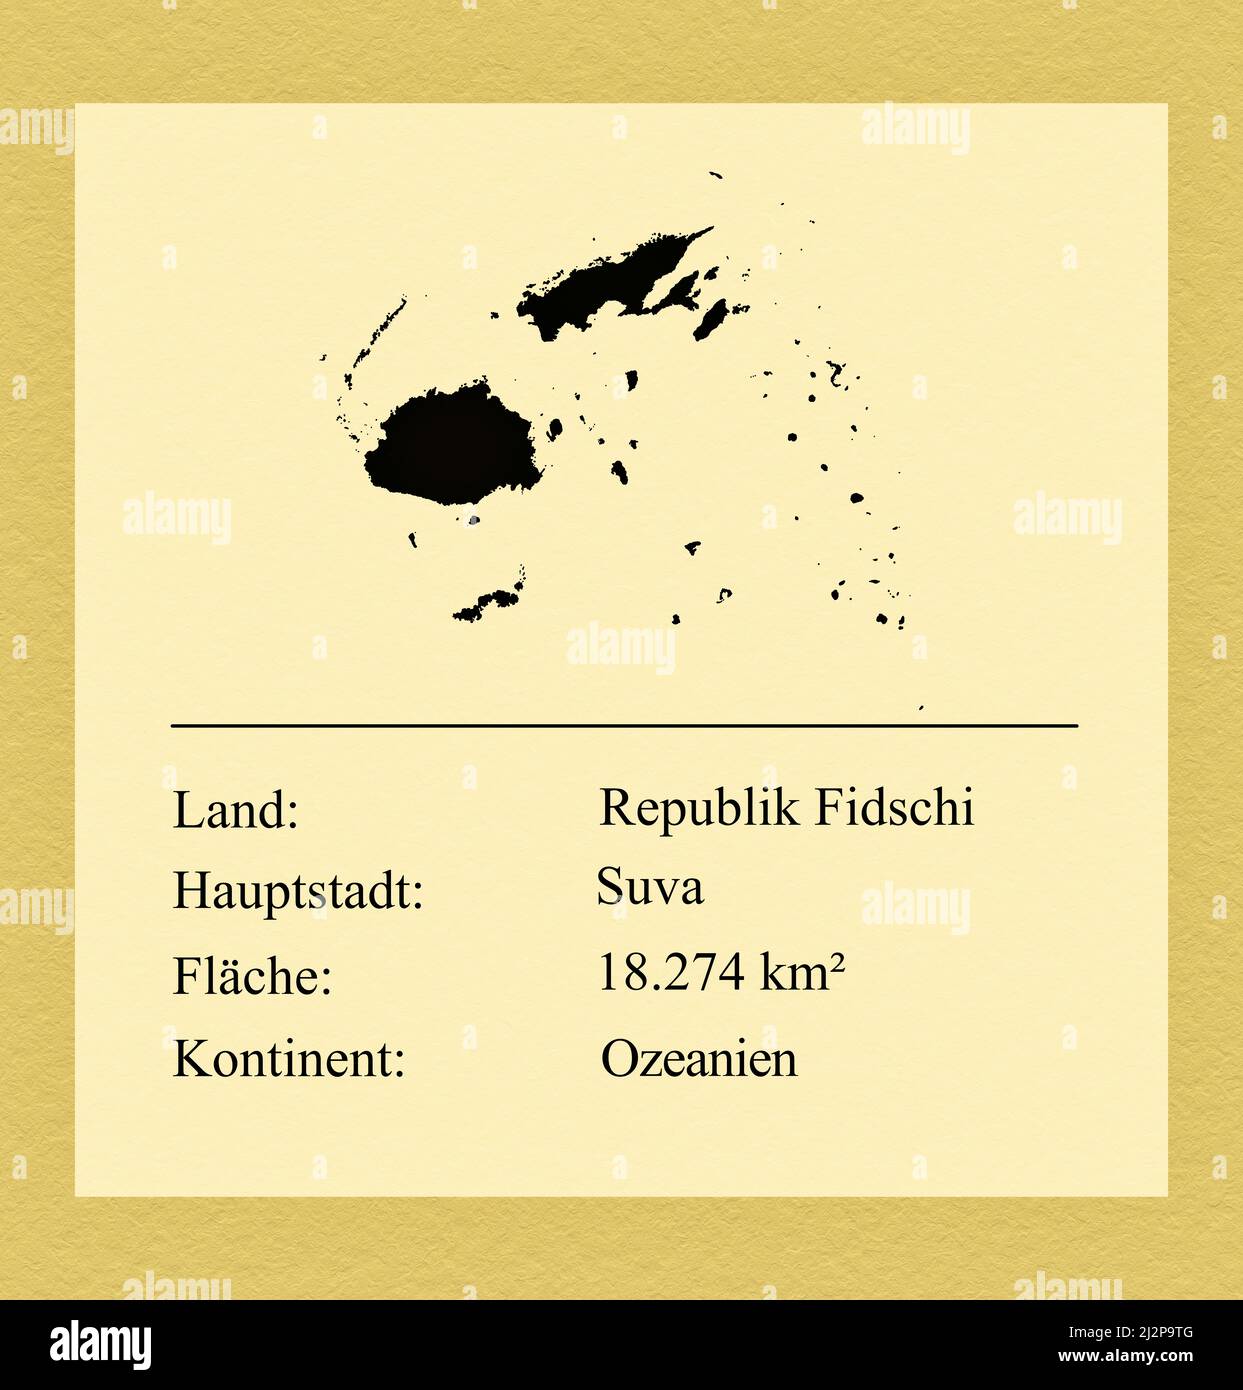 Umrisse des Landes Republik Fidschi, darunter ein kleiner Steckbrief mit Ländernamen, Hauptstadt, Fläche und Kontinent Foto de stock